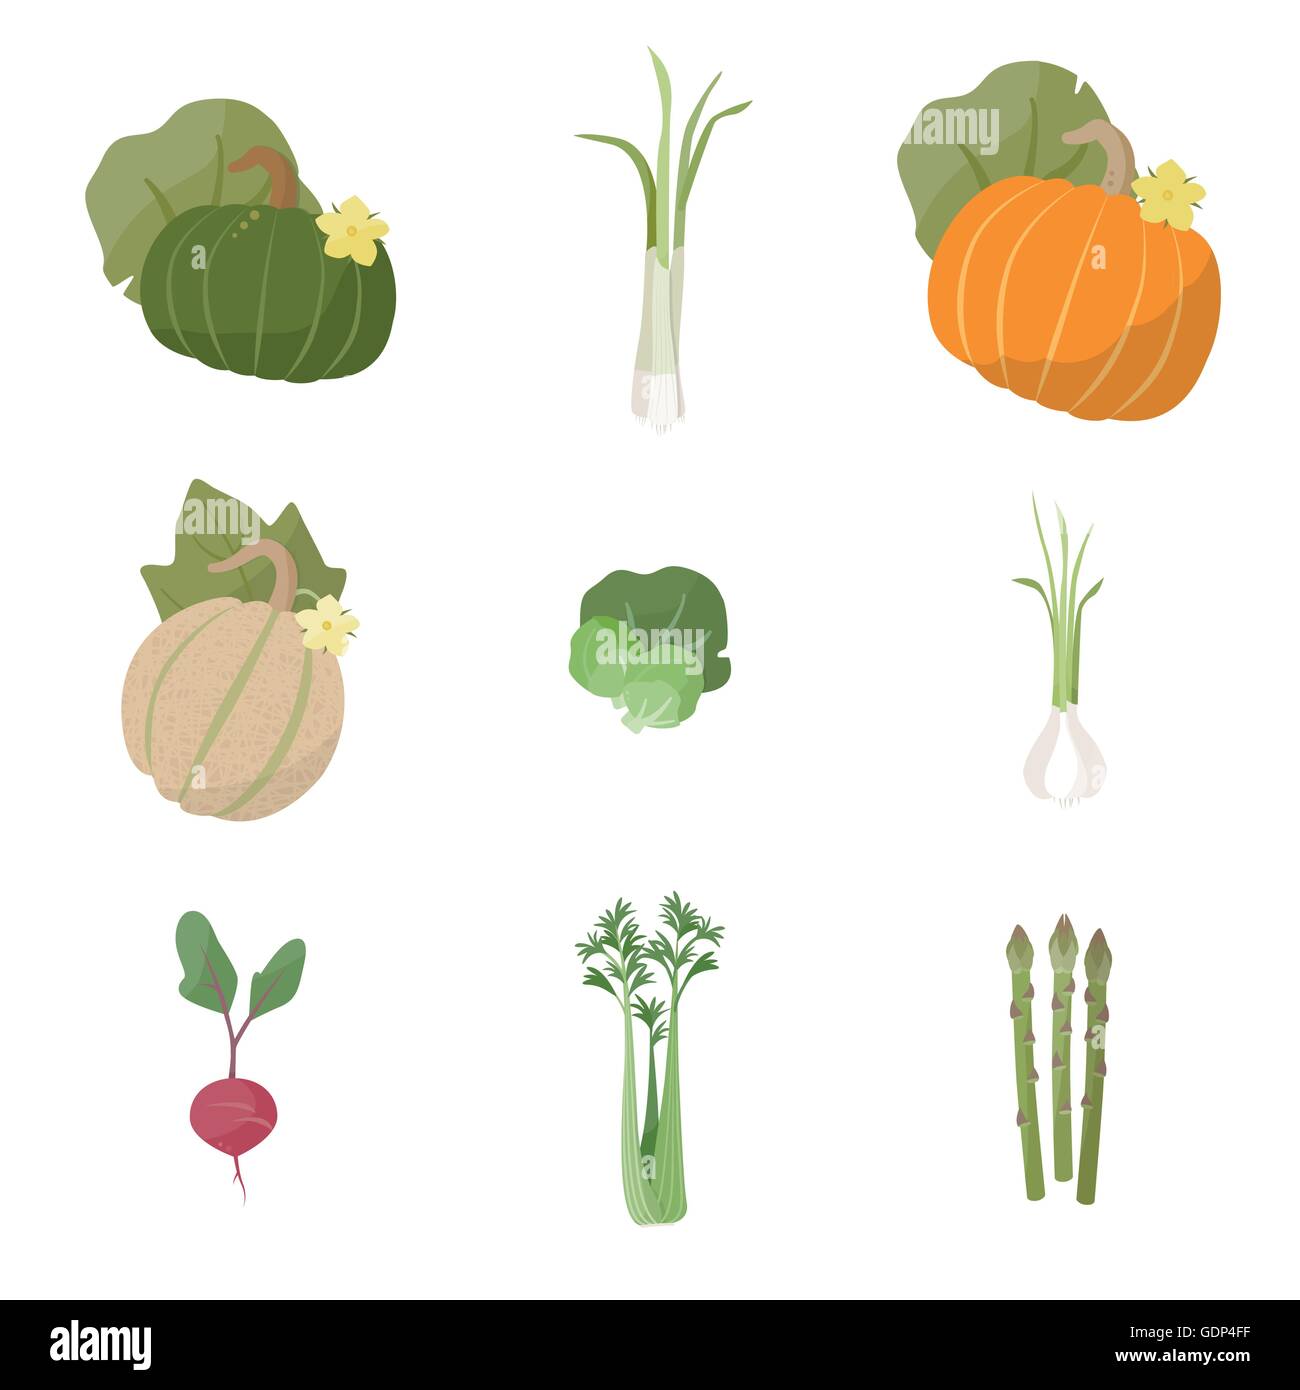 Les légumes frais du jardin situé sur fond blanc, y compris la citrouille, les oignons verts, melon, choux de Bruxelles, l'ail, radis, céleri, Illustration de Vecteur